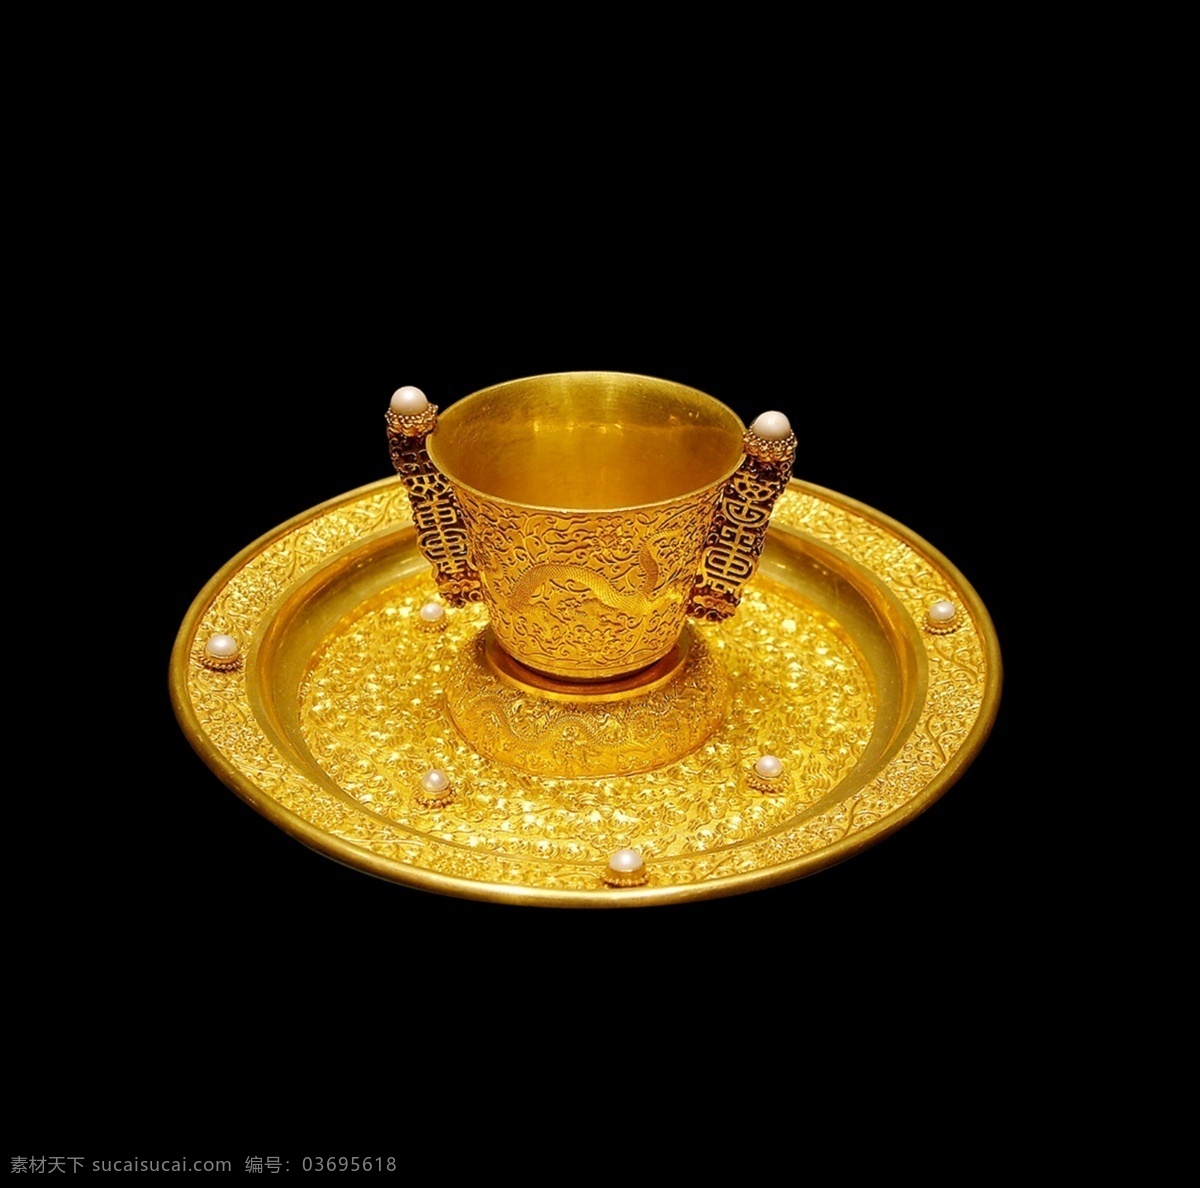 psd源文件 华丽 黄金 杯子 盘子 雕塑 企业 雕刻 西方 神话 被子 珍珠 装饰素材 印章 图案